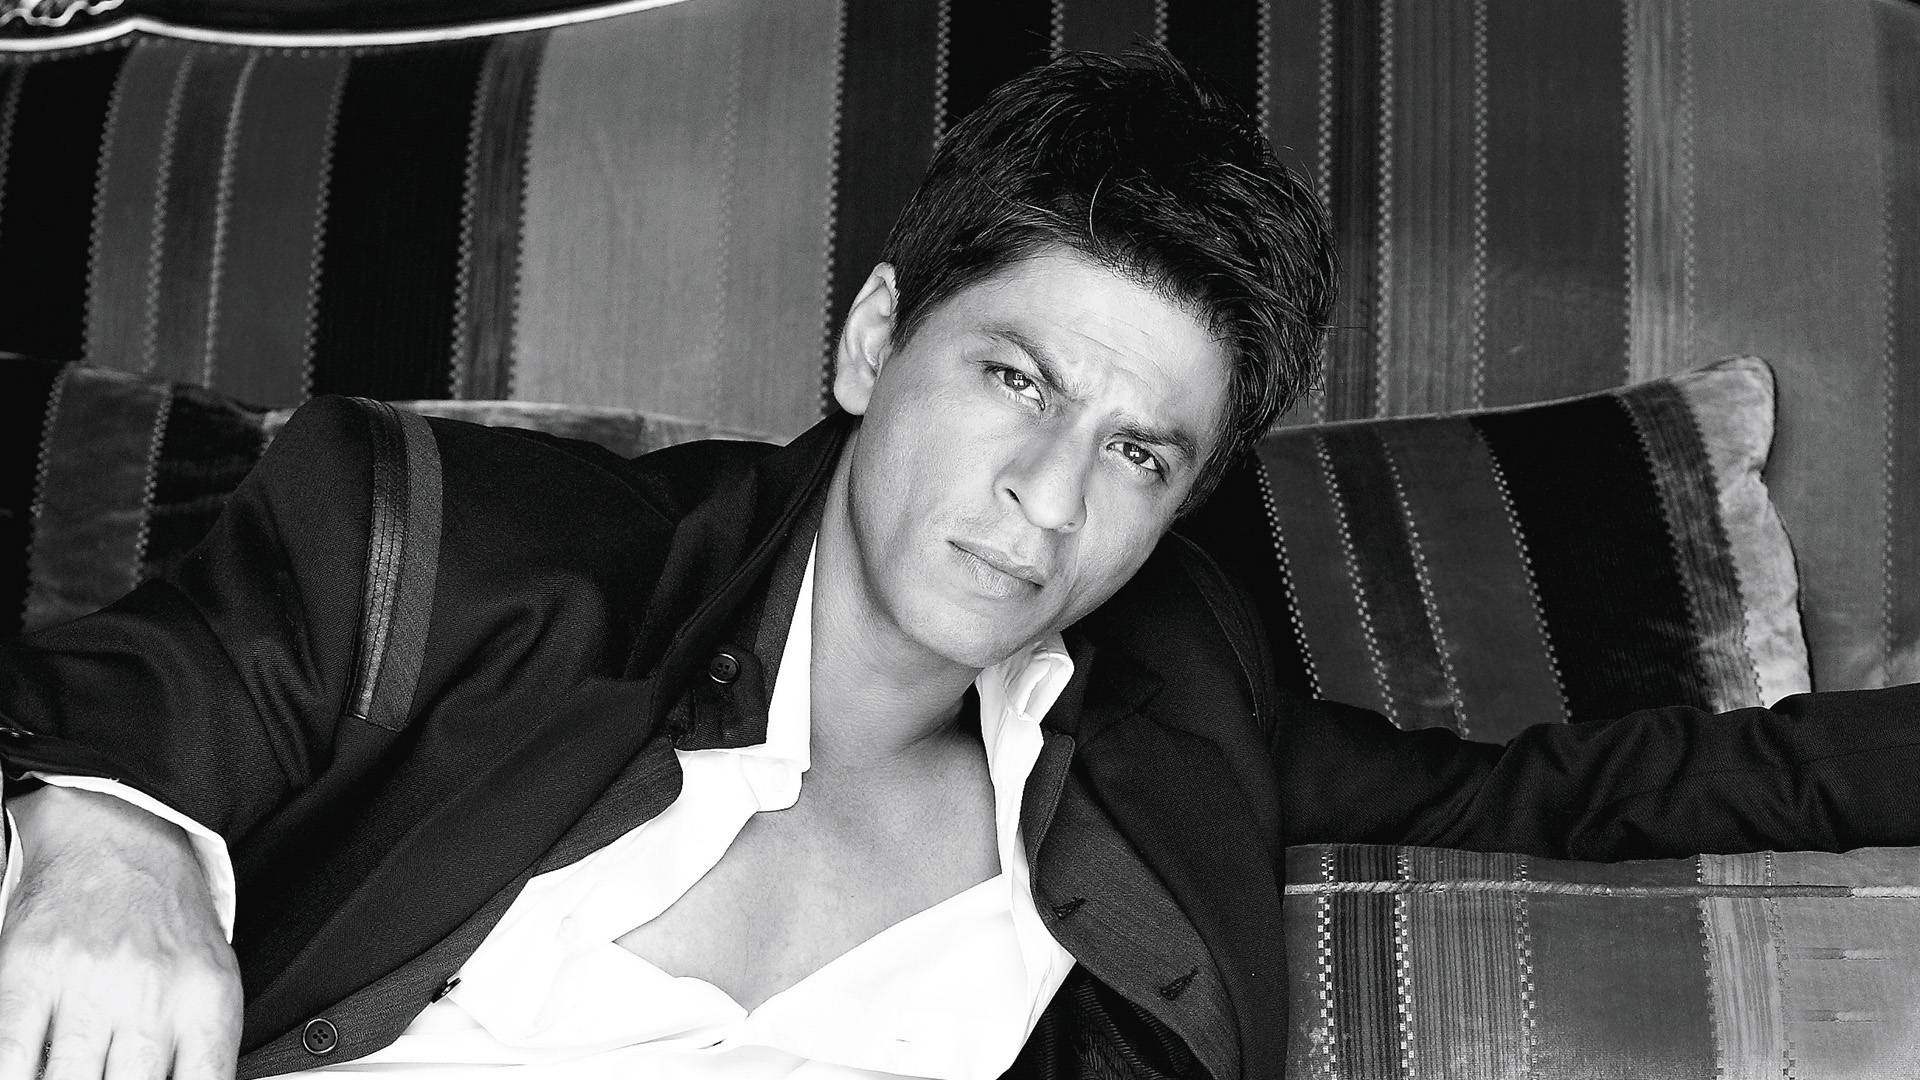 Monochrome Shah Rukh Khan